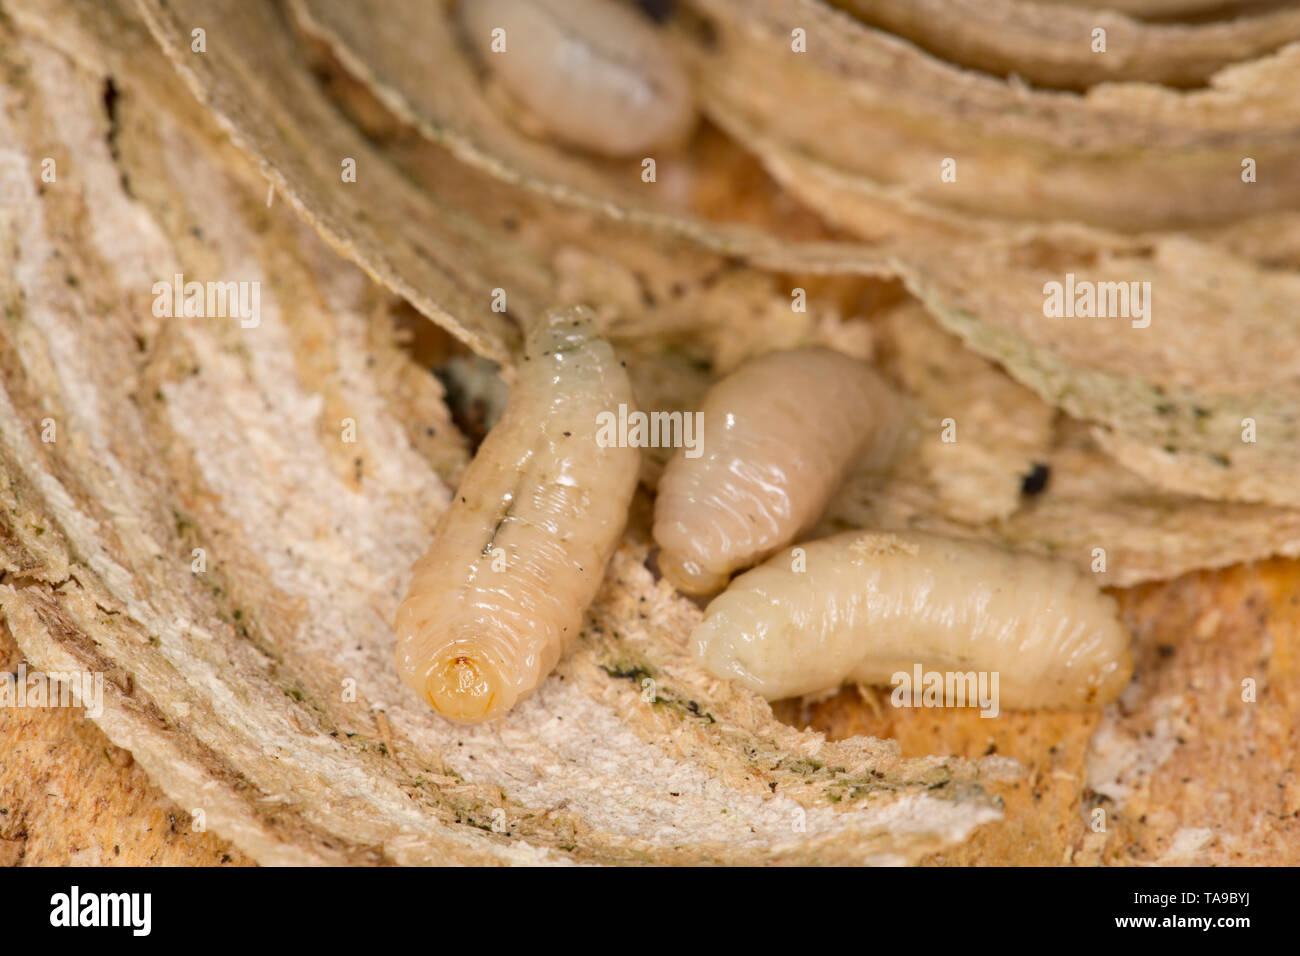 Vespa larva uk immagini e fotografie stock ad alta risoluzione - Alamy